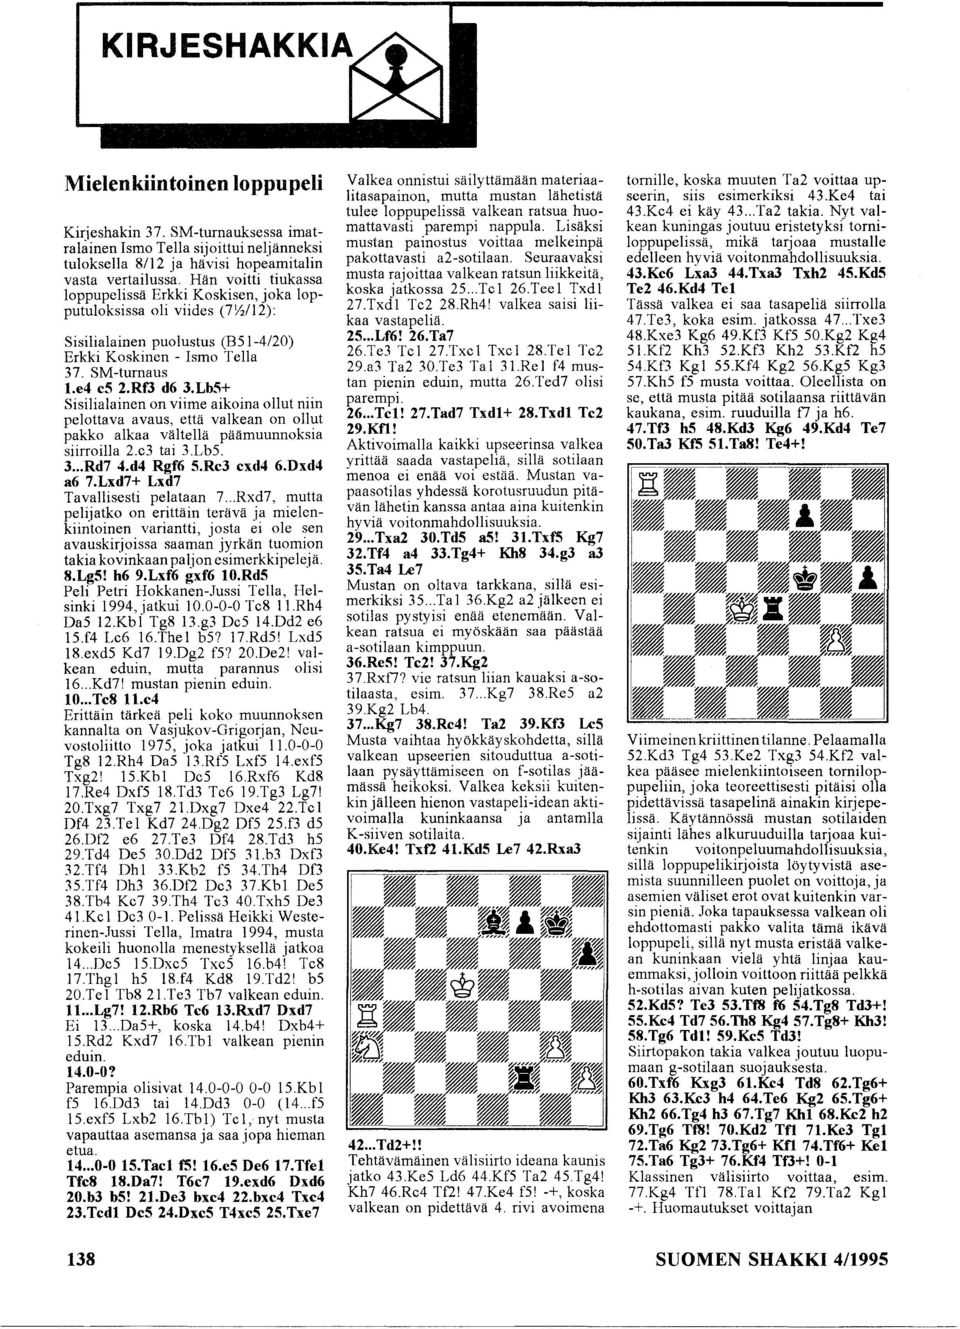 Lb5+ Sisilialainen on viime aikoina ollut niin pelottava avaus, että valkean on ollut pakko alkaa vältellä päämuunnoksia siirroilla 2.e3 tai 3.LbS. 3... Rd7 4.d4 Rgf6 5.Rc3 exd4 6.Dxd4 a6 7.